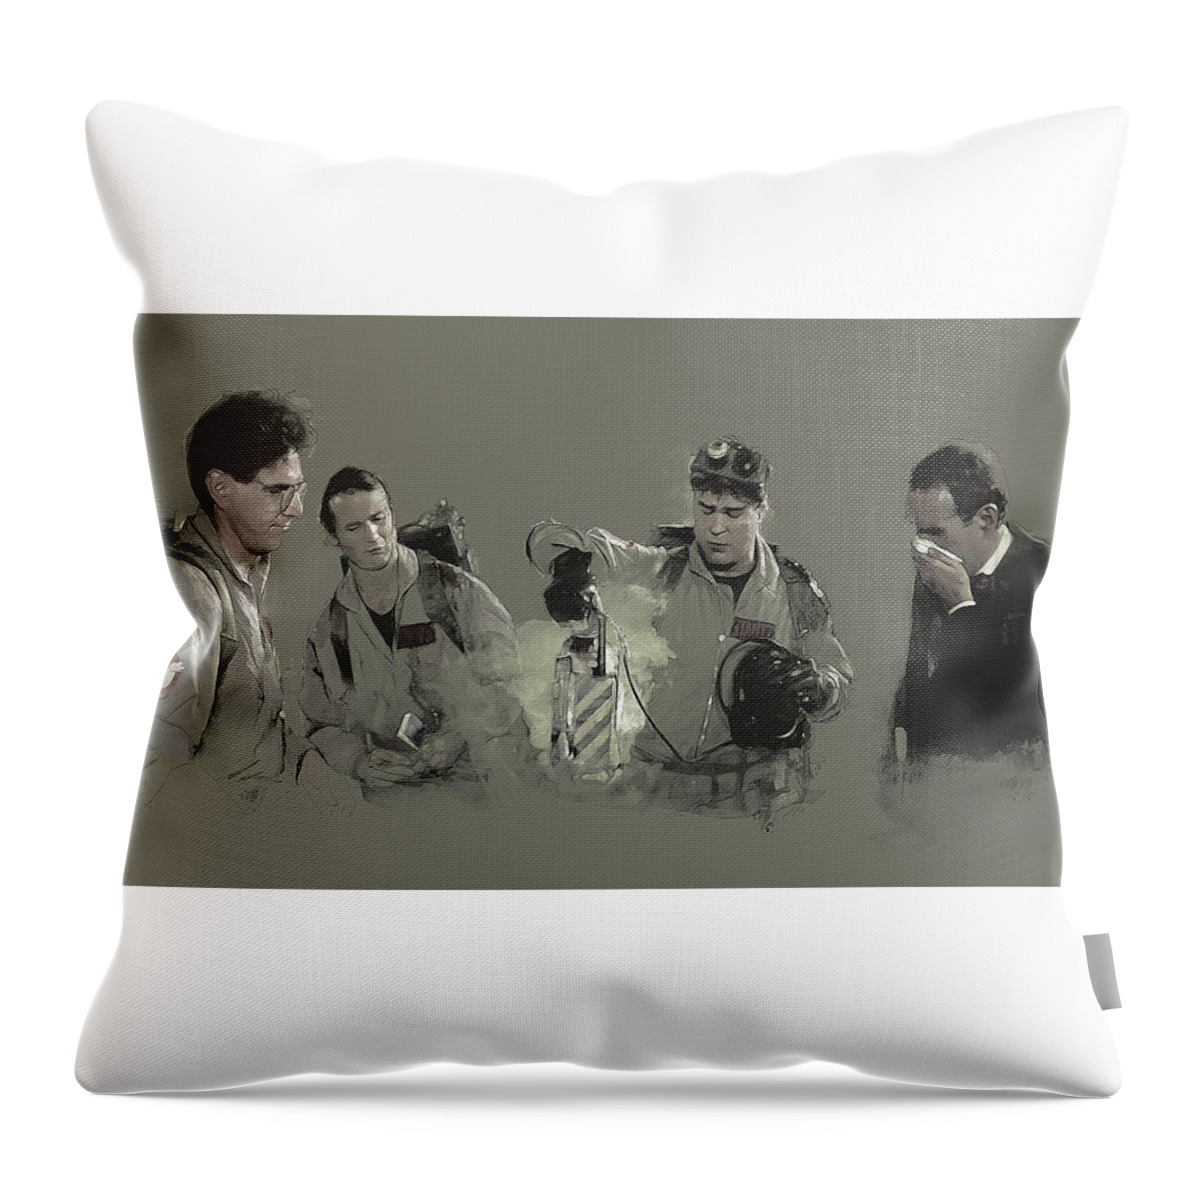 Ghostbusters Throw Pillow featuring the digital art Class 5 Full-Roaming Vapor by Kurt Ramschissel